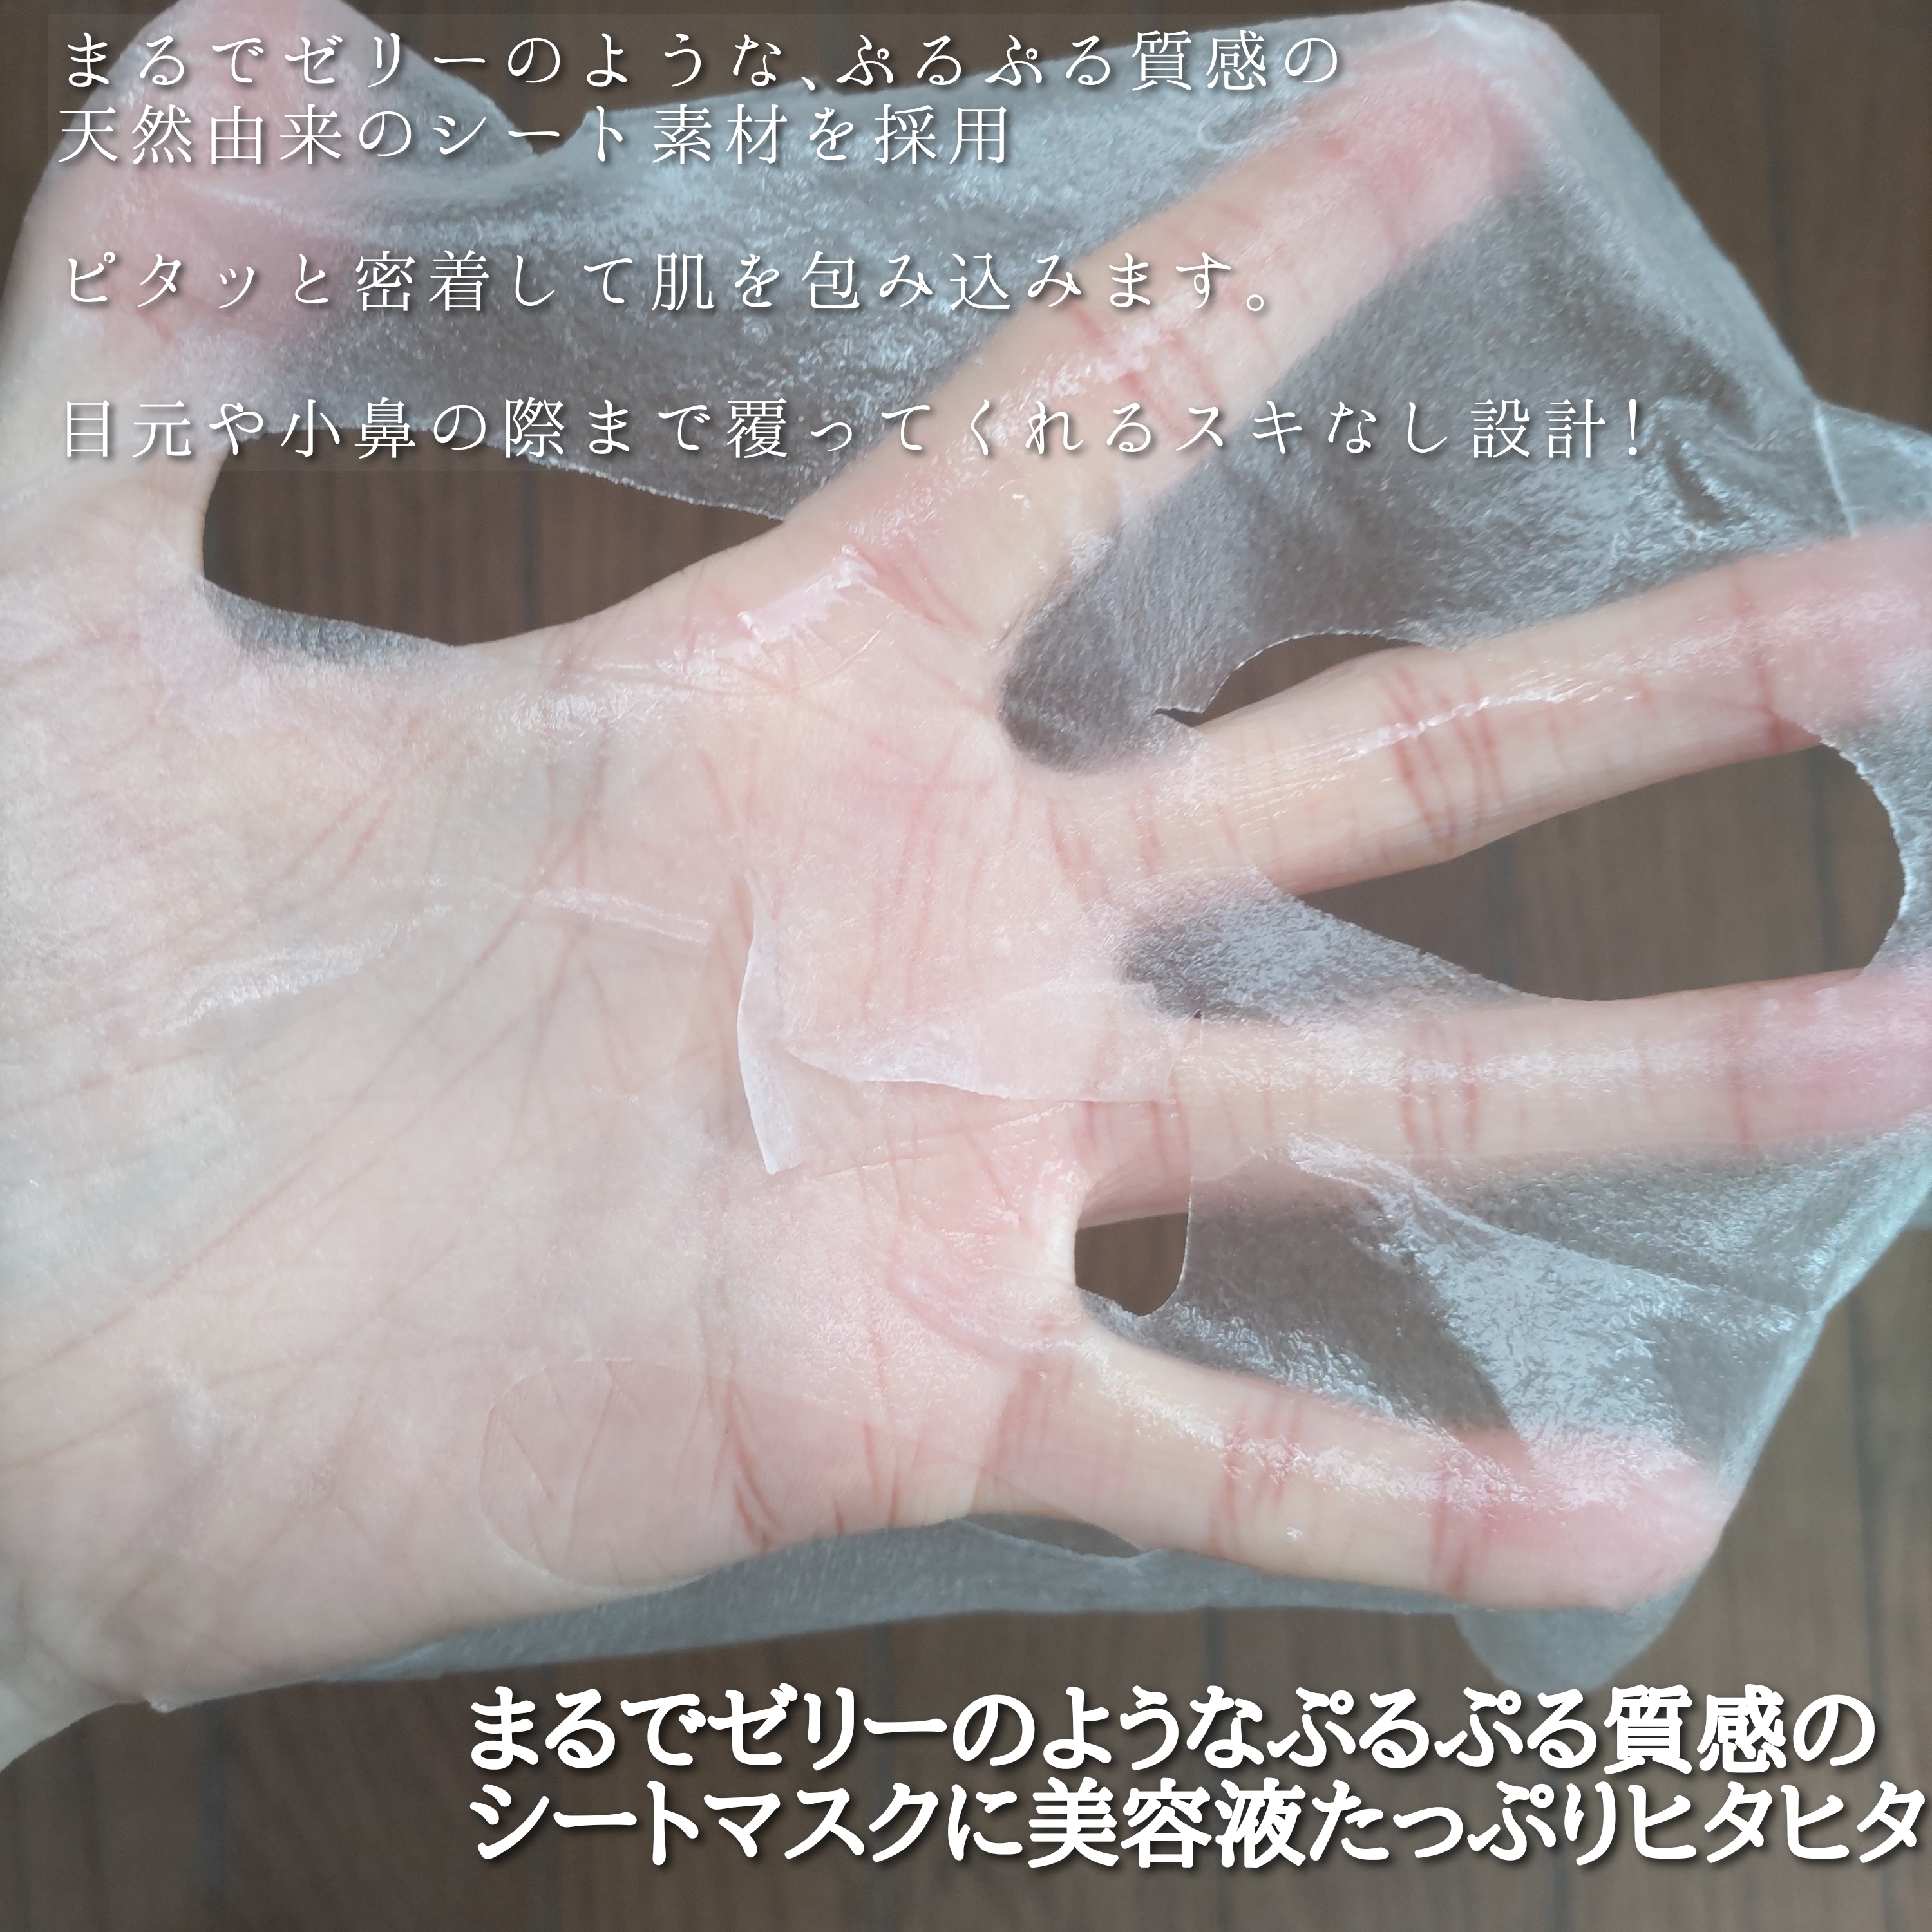 ネイチャーリパブリック YOKUBARI パーフェクトバランシング ビタミンゼリーマスクを使ったYuKaRi♡さんのクチコミ画像4